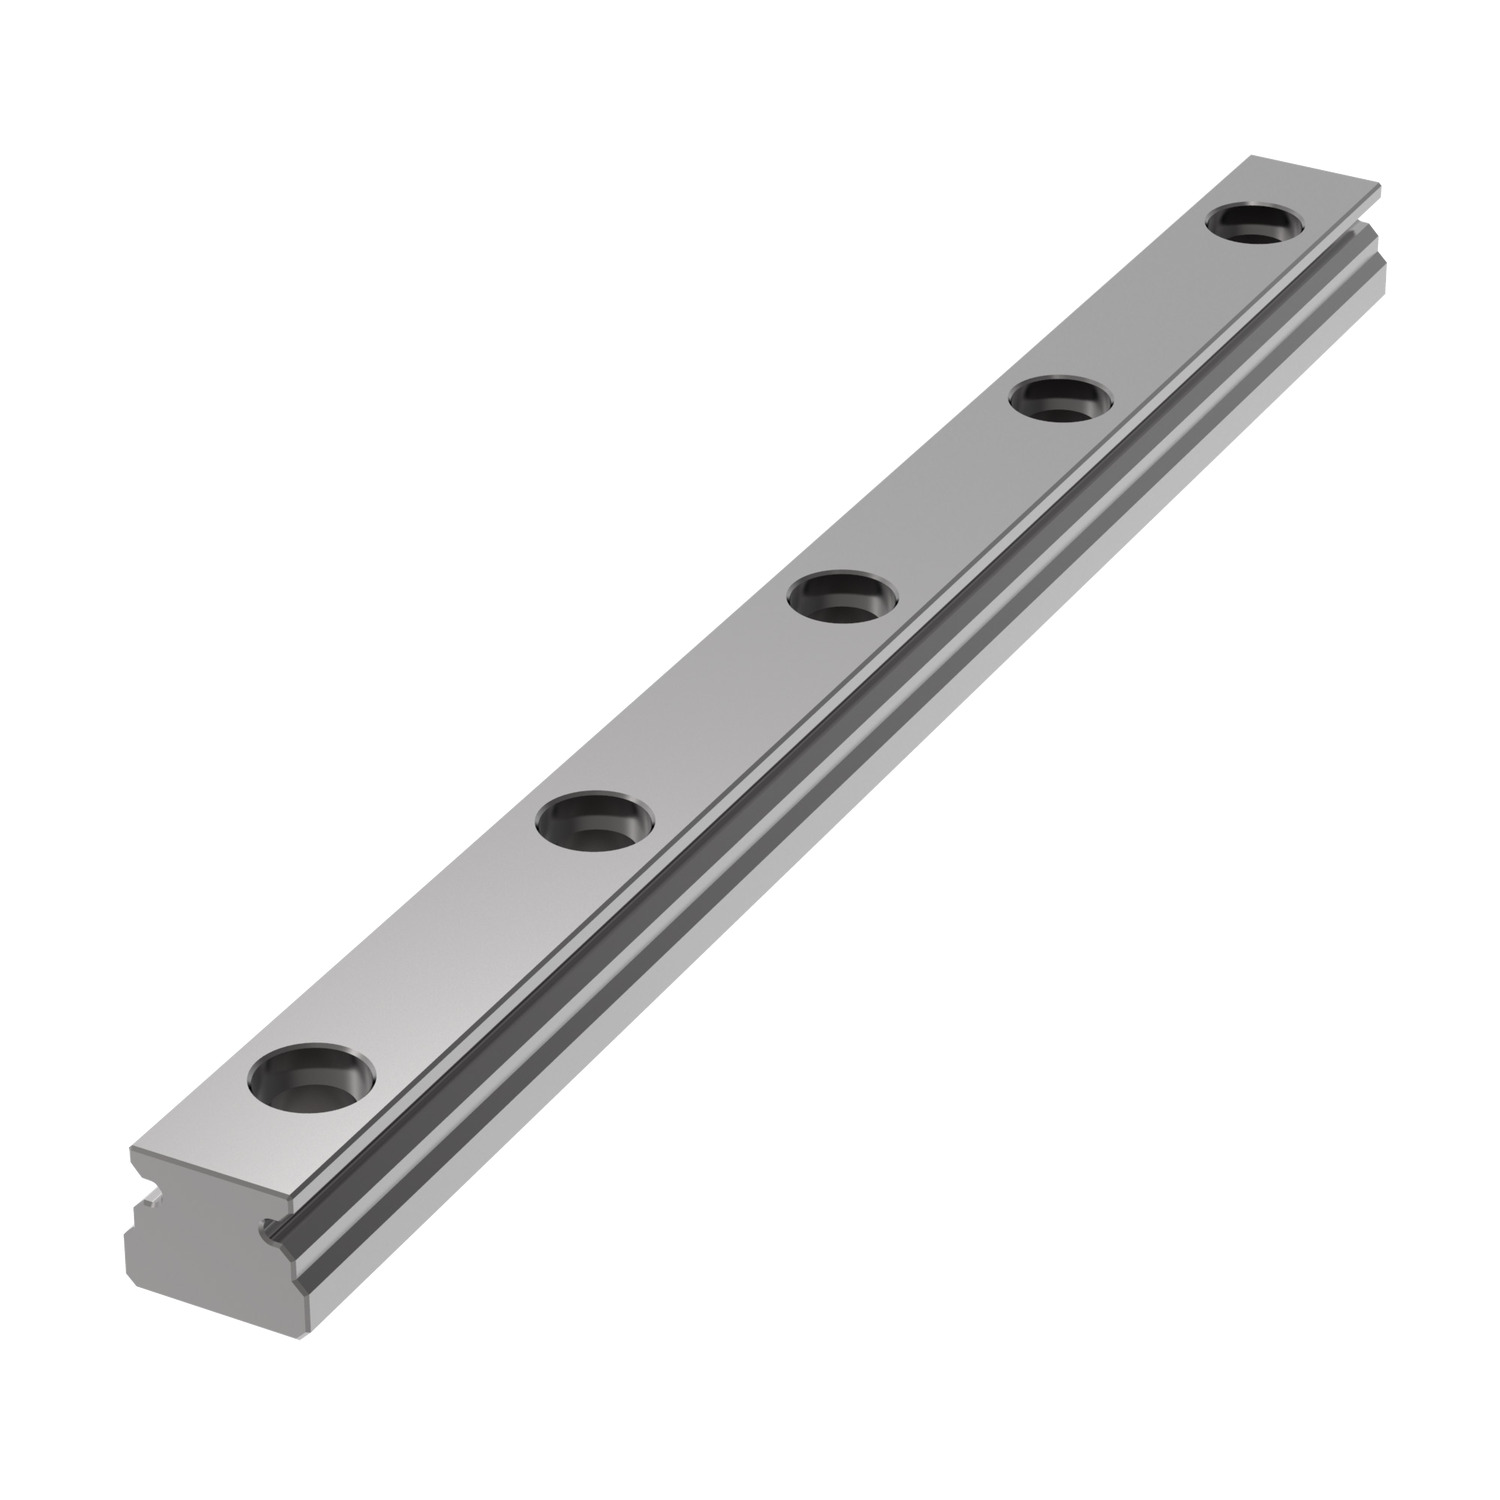 L1010.05 5mm Miniature Linear Rail